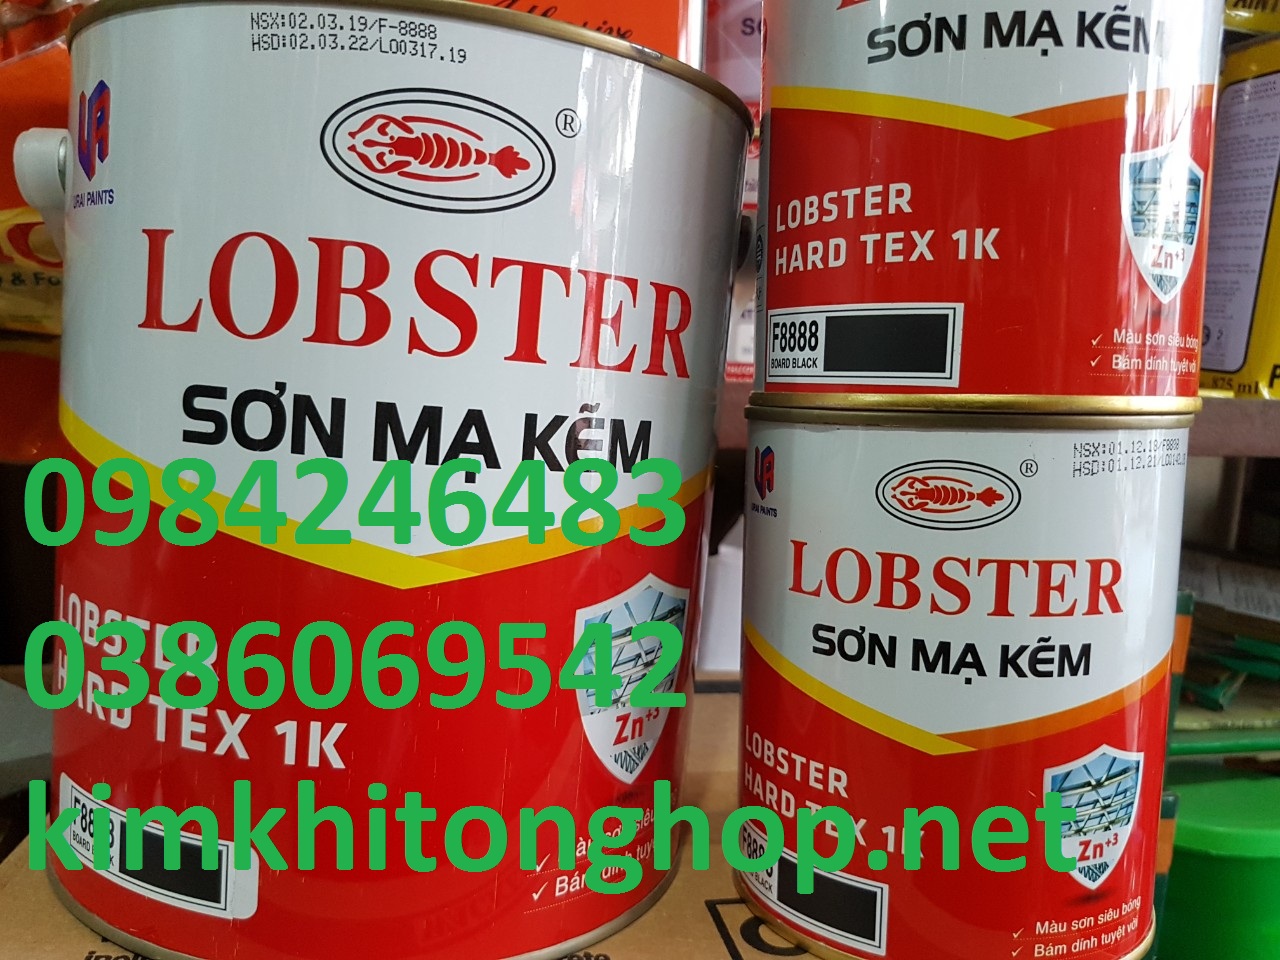 Giá đại lý sơn mạ kẽm Lobster rẻ